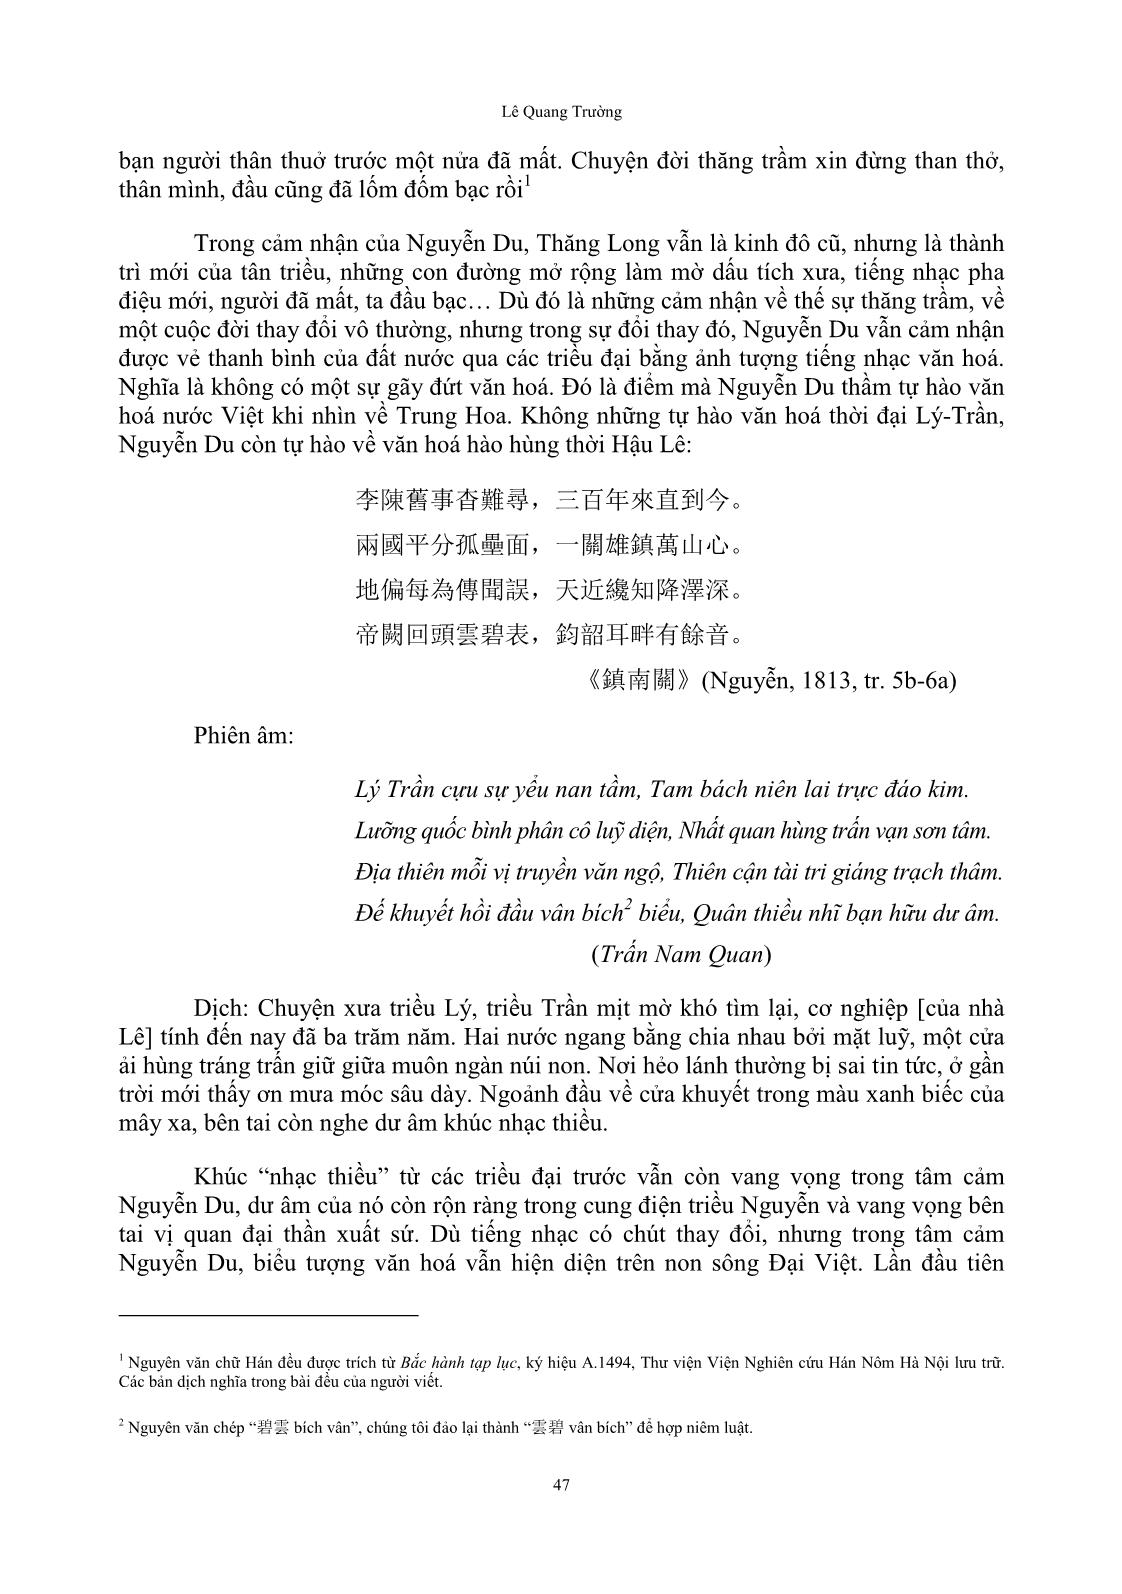 Cảm thức của Nguyễn Du về Trung Quốc Thanh triều trong “Bắc hành tạp lục” trang 5